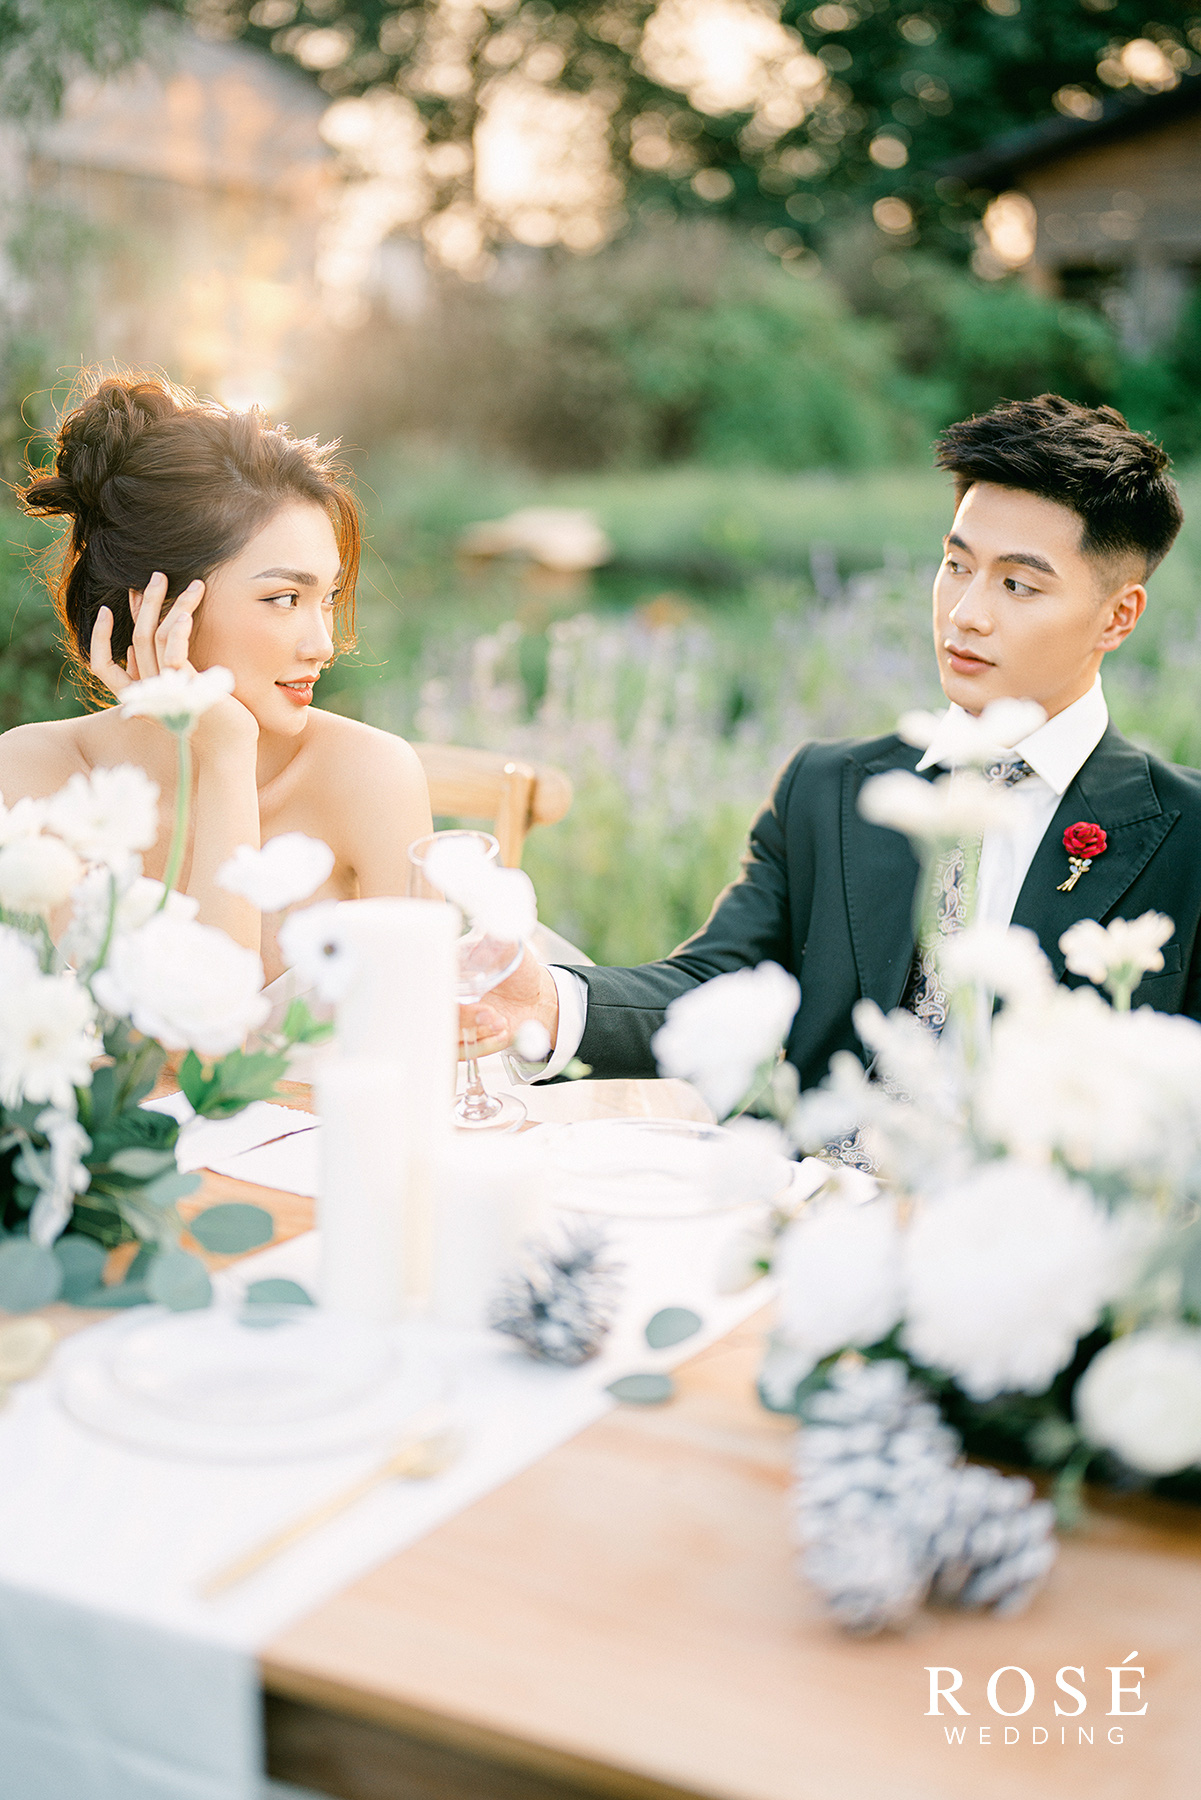 Hé lộ ảnh cưới đẹp lung linh của “Gương mặt đẹp nhất Hoa hậu Hoàn vũ Việt Nam” - Ảnh 7.